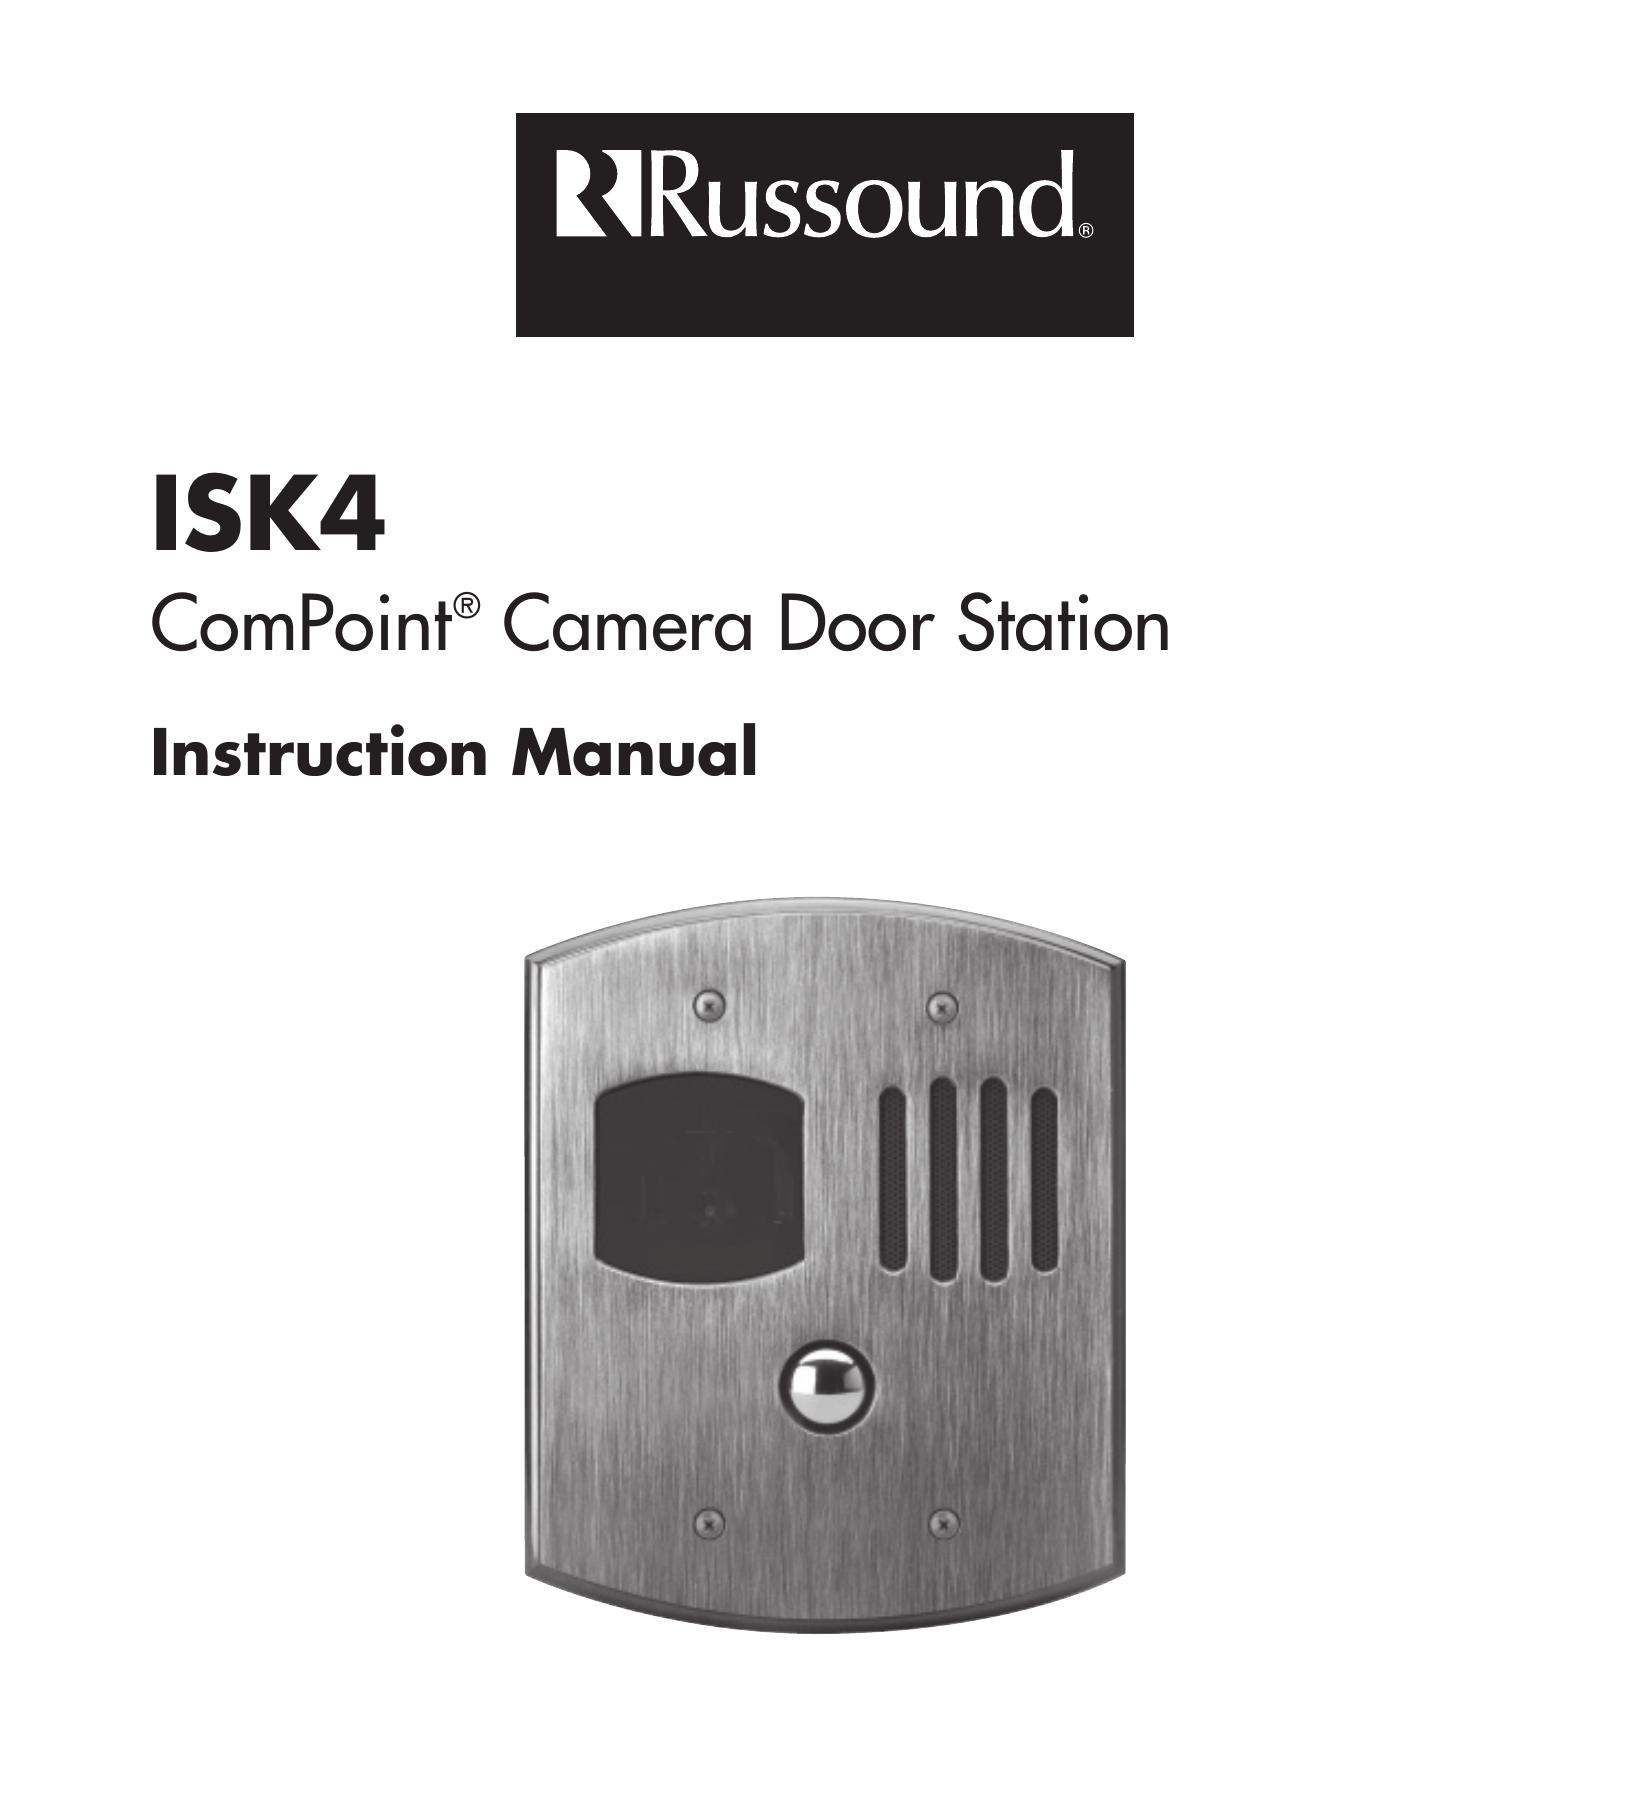 Russound camera door station Digital Camera User Manual